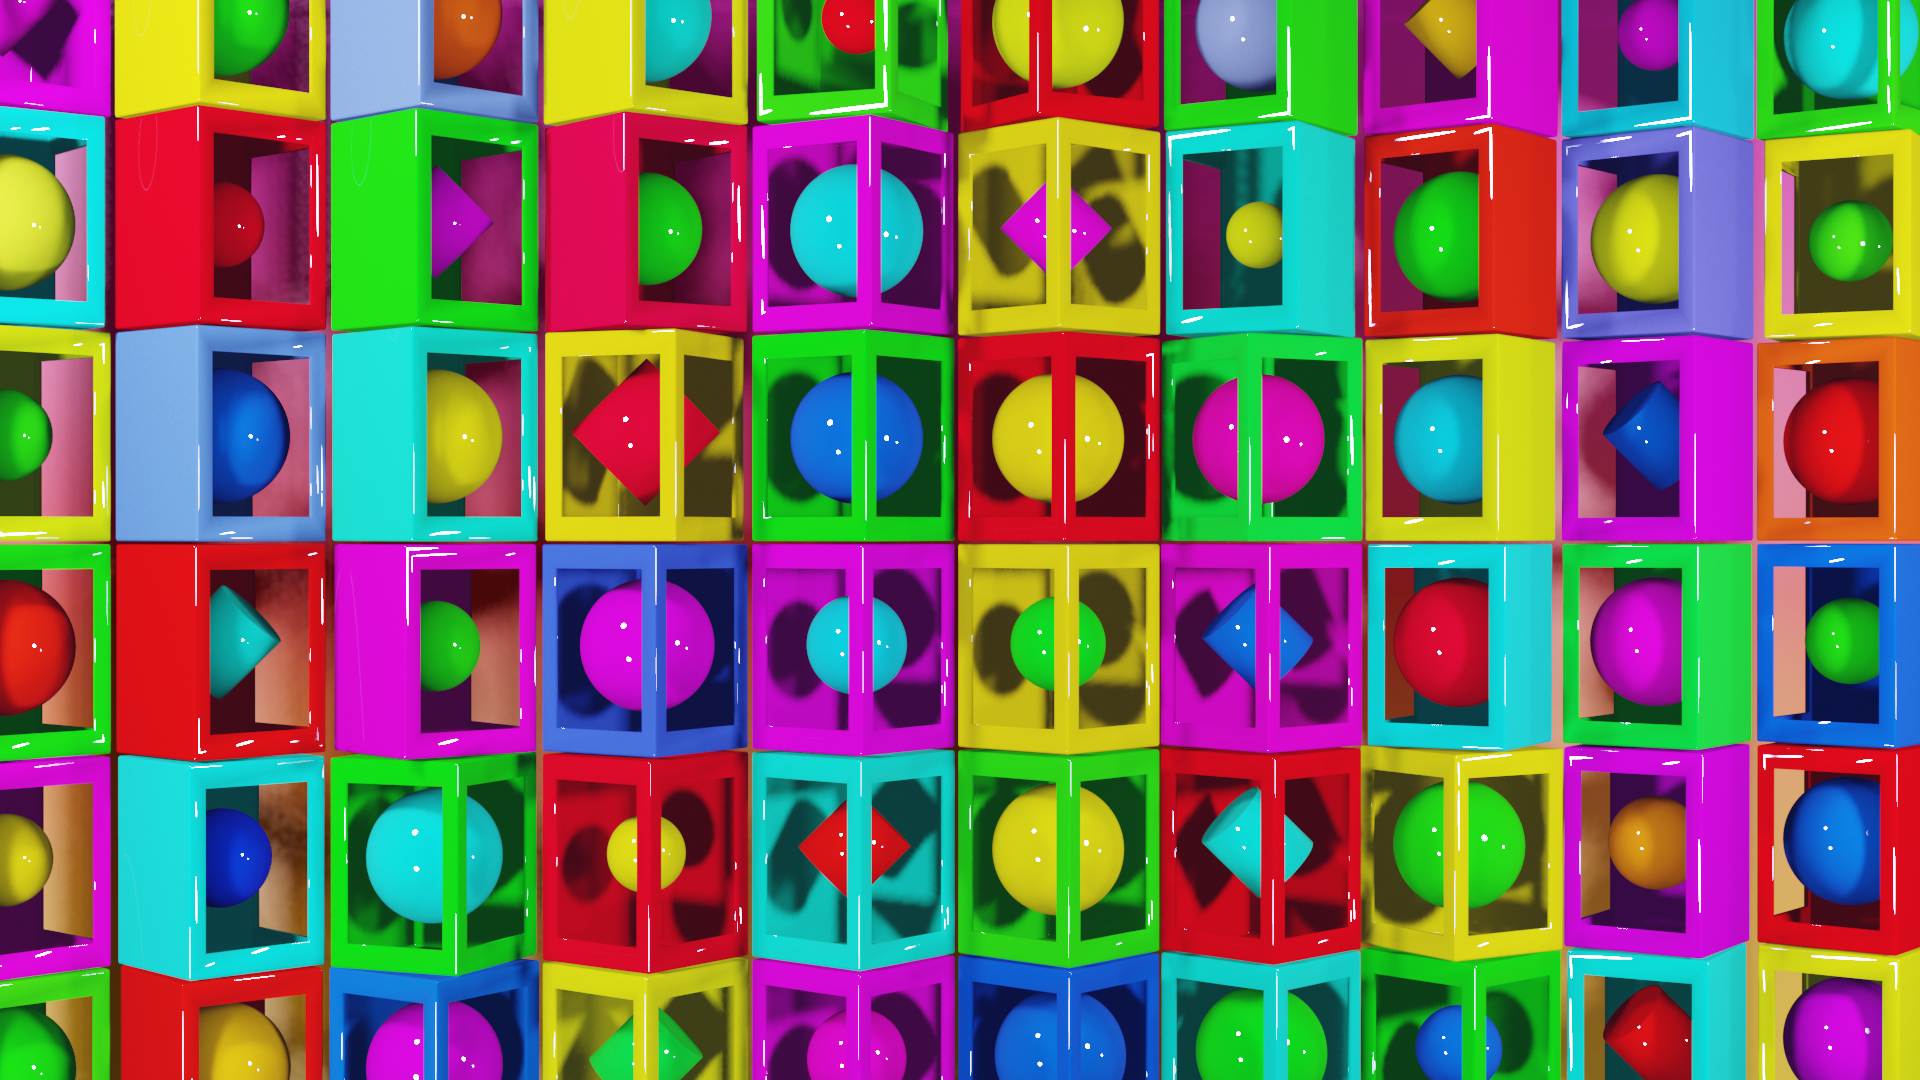 Blender 3d Завораживающие фигуры кубики.